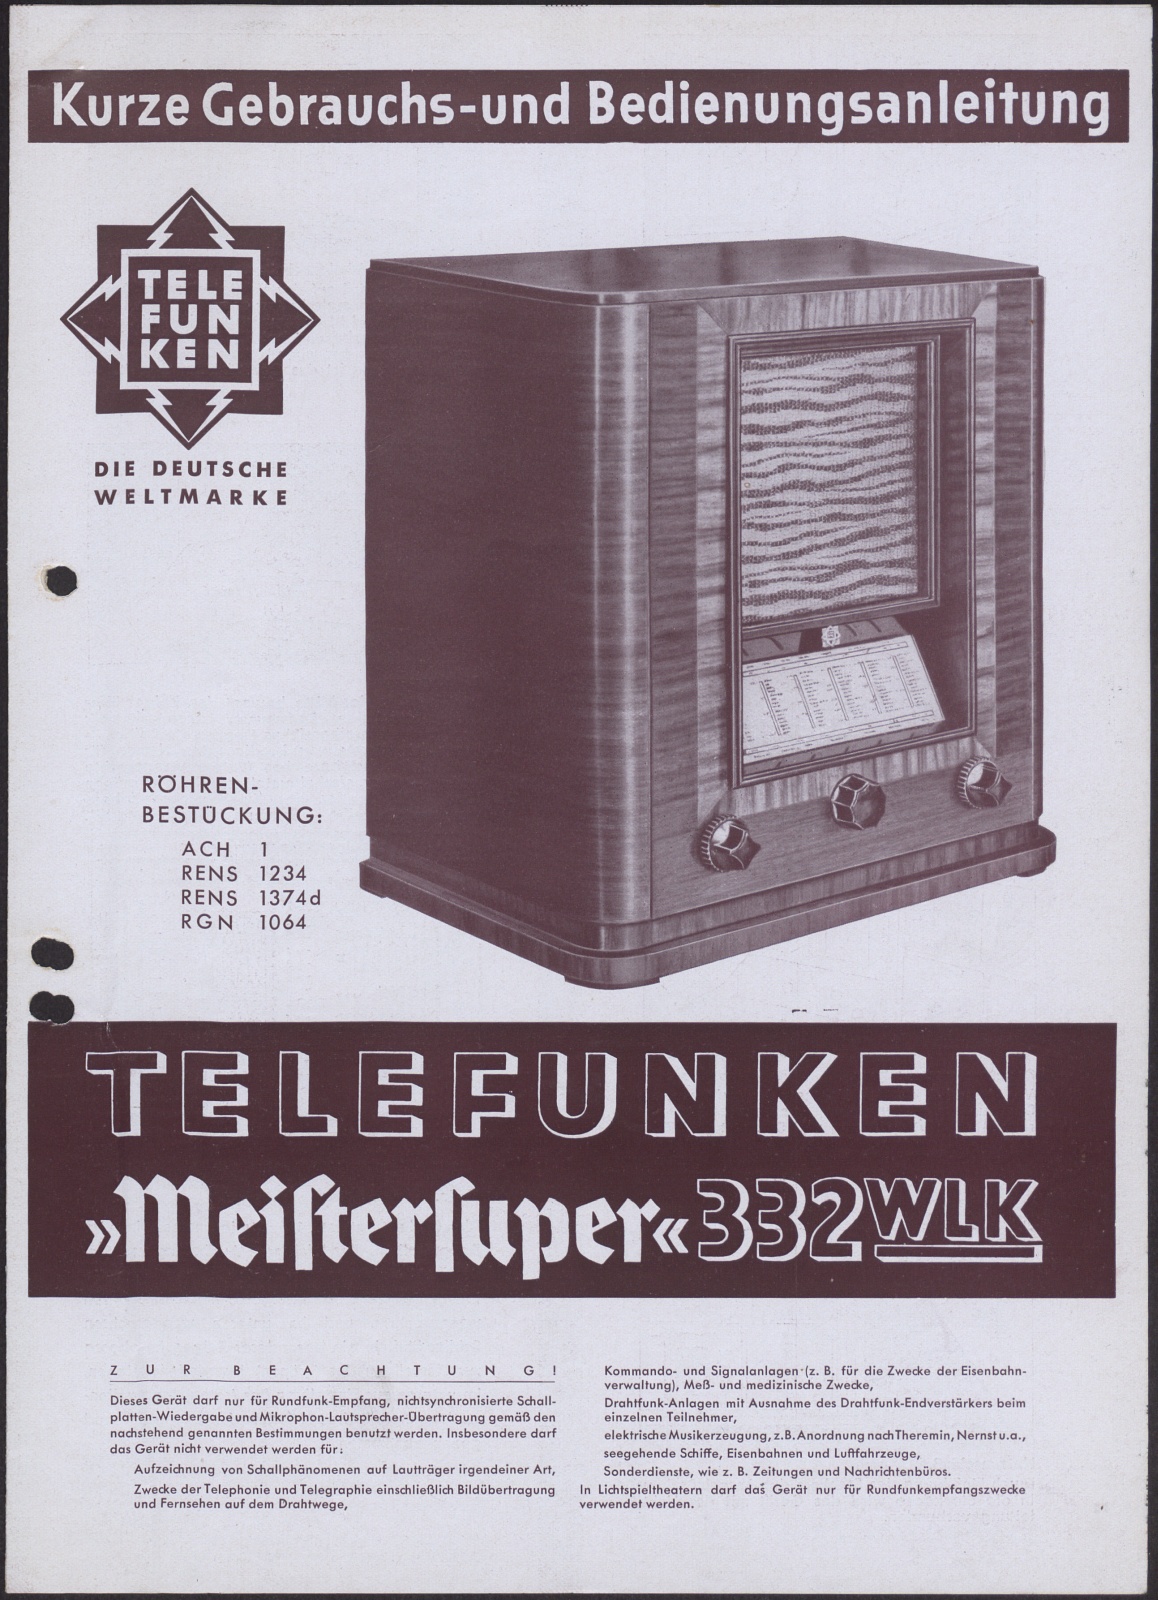 Bedienungsanleitung: Kurze Gebrauchs- und Bedienungsanleitung Telefunken "Meistersuper" 332 WLK (Stiftung Deutsches Technikmuseum Berlin CC0)